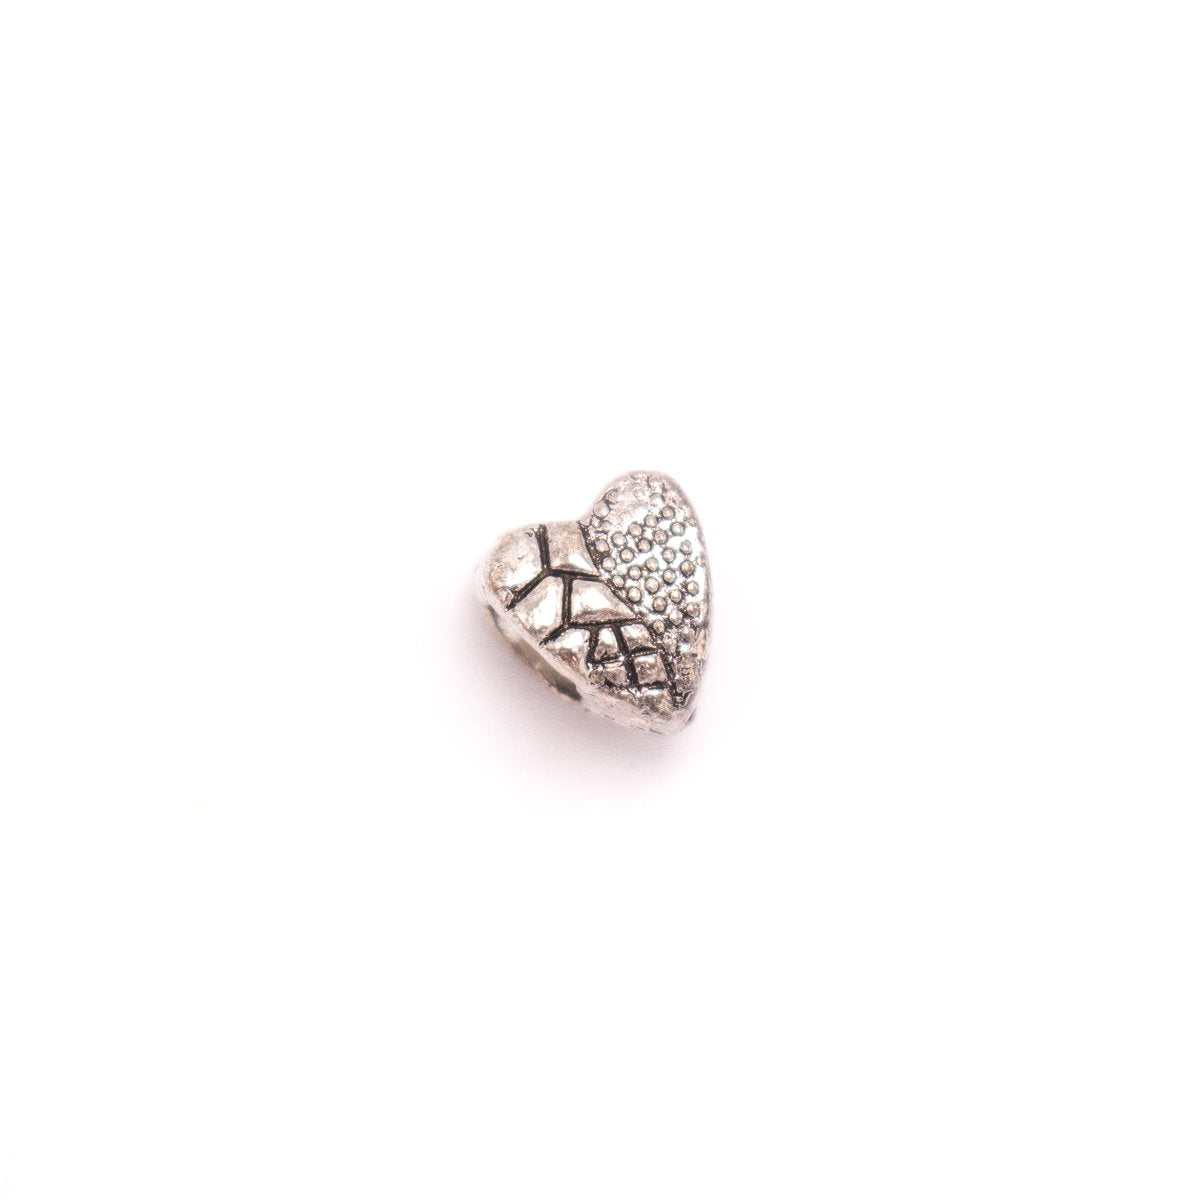 20 pièces pour cuir de 5mm, argent antique, zamak, perles rondes en forme de cœur, fourniture de bijoux, composants-D-5-5-152